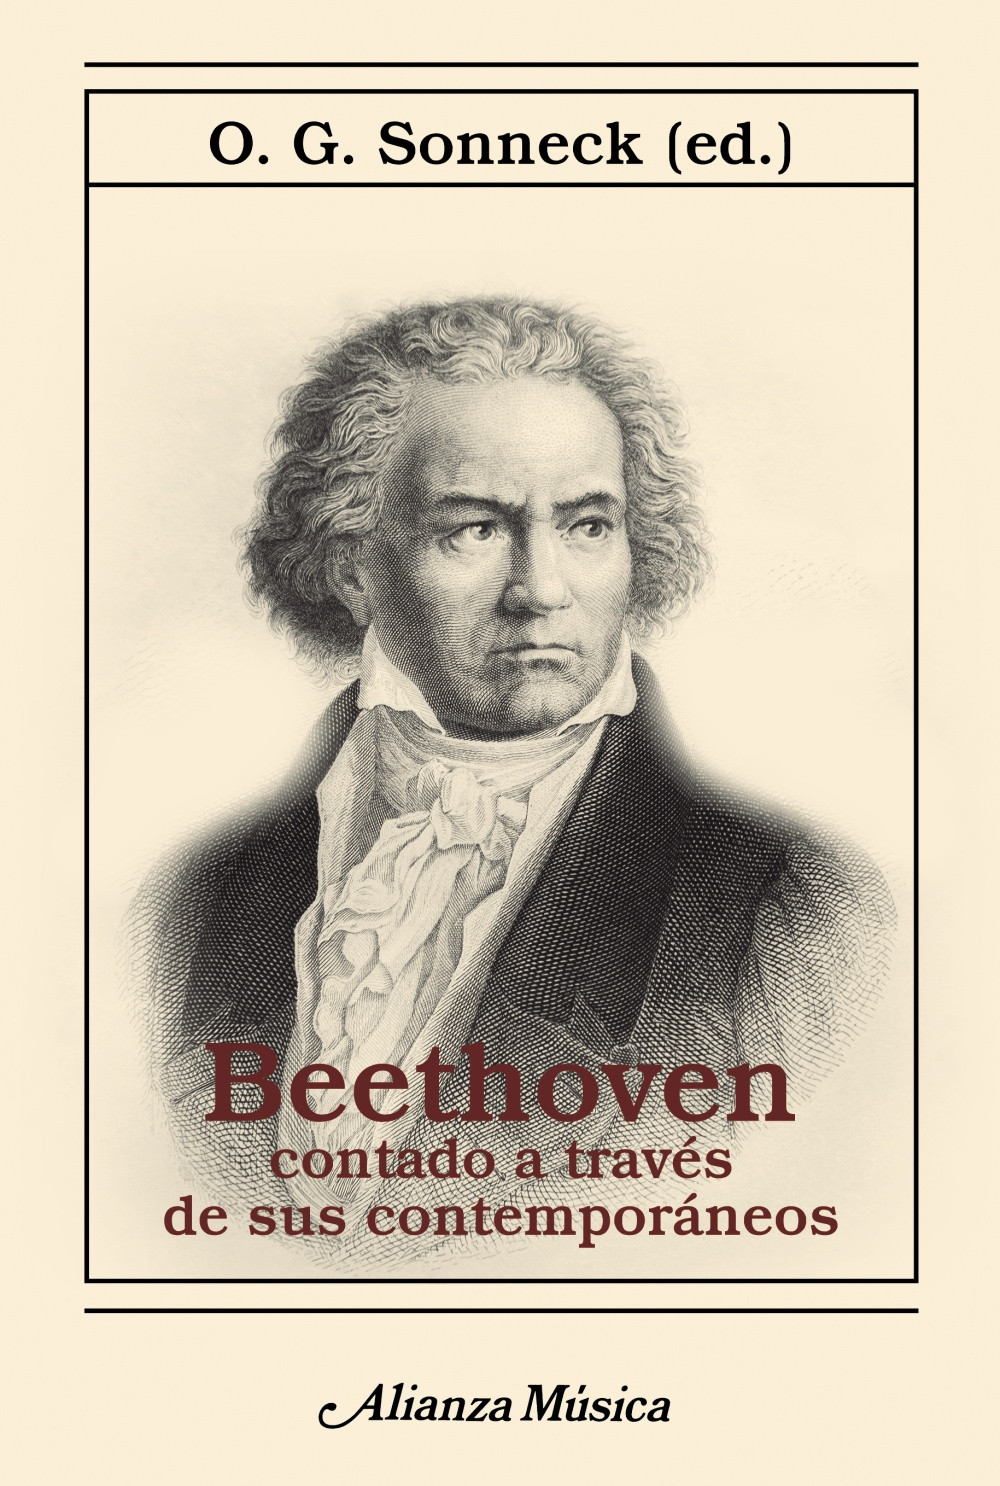 Beethoven contado a travu00e9s de sus contemporu00e1neos, de O. G. Sonneck. Alianza Mu00fasica